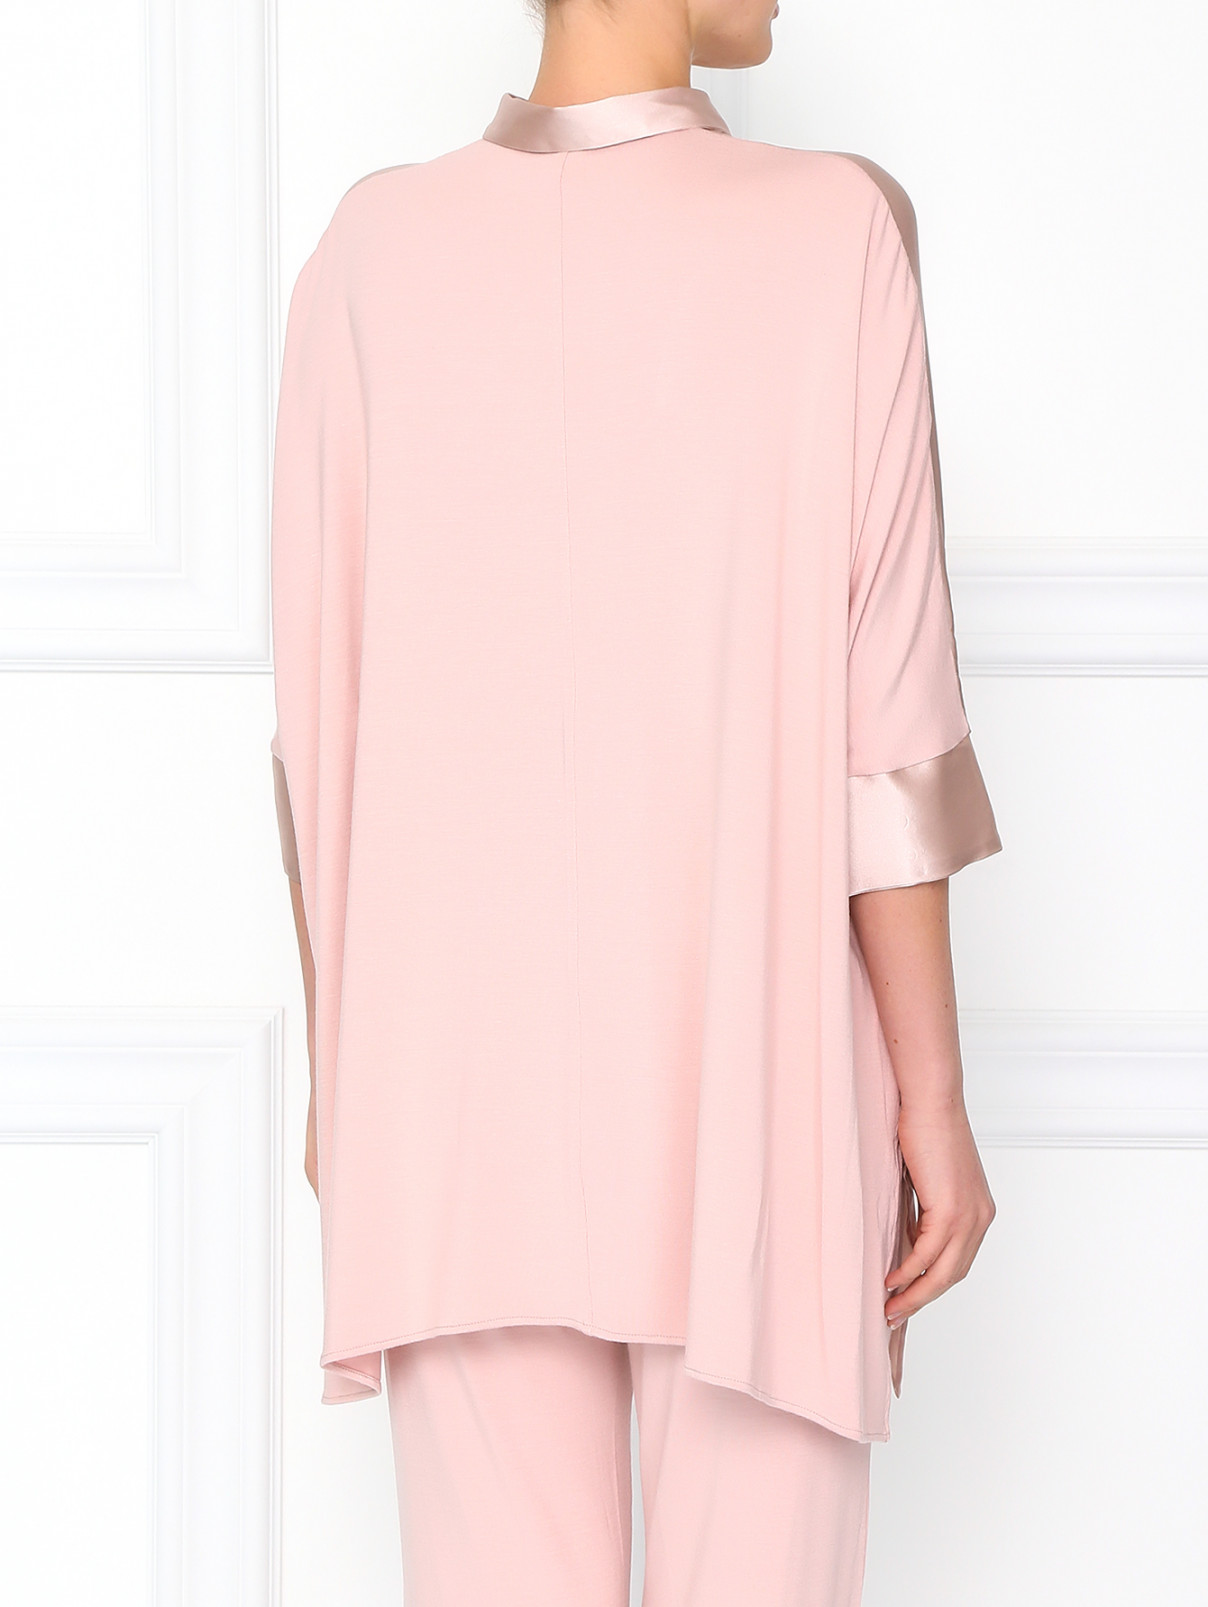 Шелковая рубашка свободного фасона Valery Prestige  –  Модель Верх-Низ1  – Цвет:  Розовый